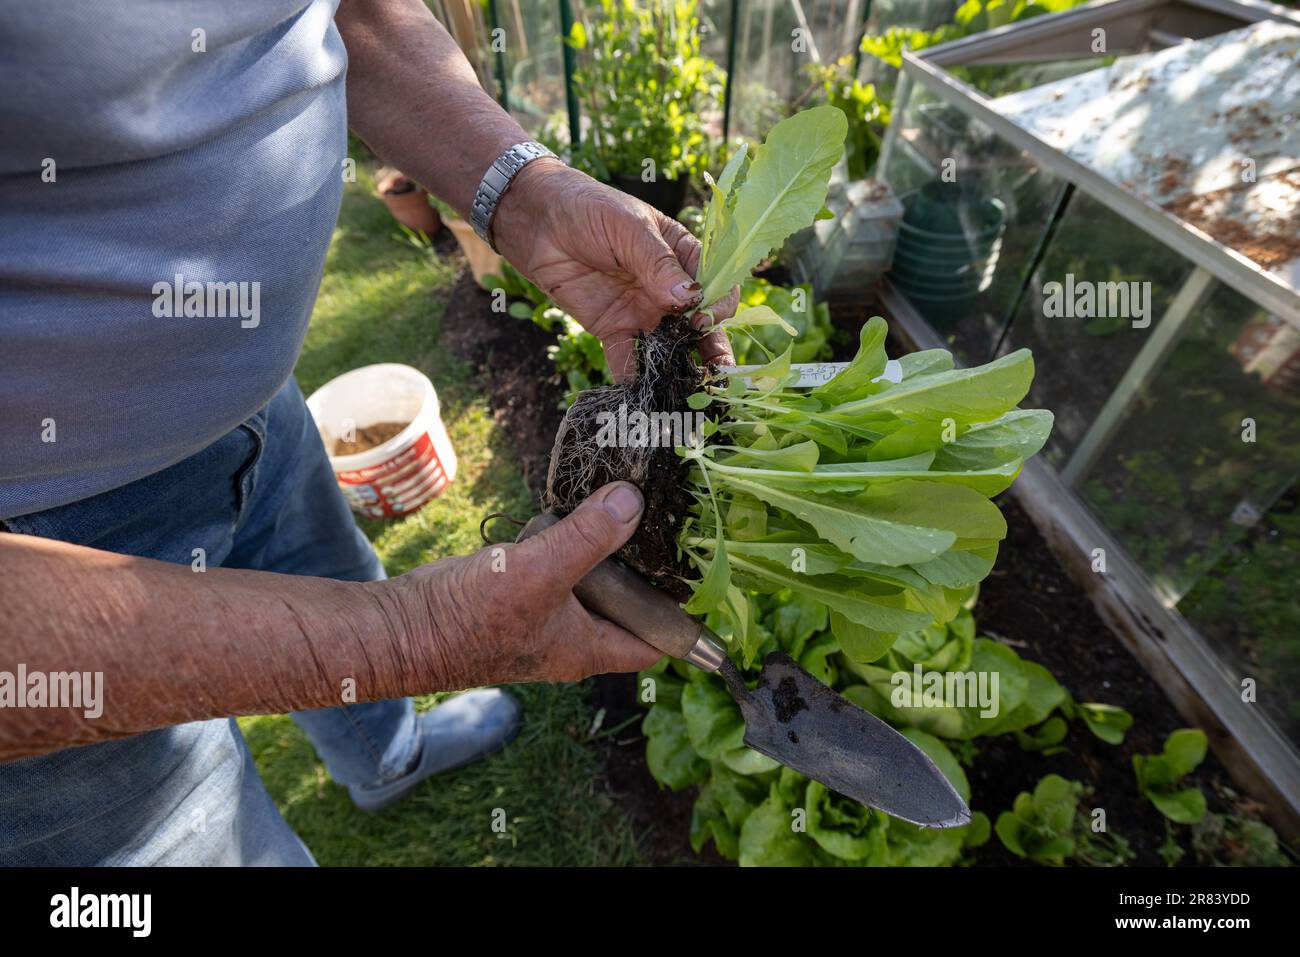 Homme âgé de quatre-vingt ans cultivant des légumes, y compris des laitues, dans son jardin arrière, Somerset, Angleterre, Royaume-Uni Banque D'Images